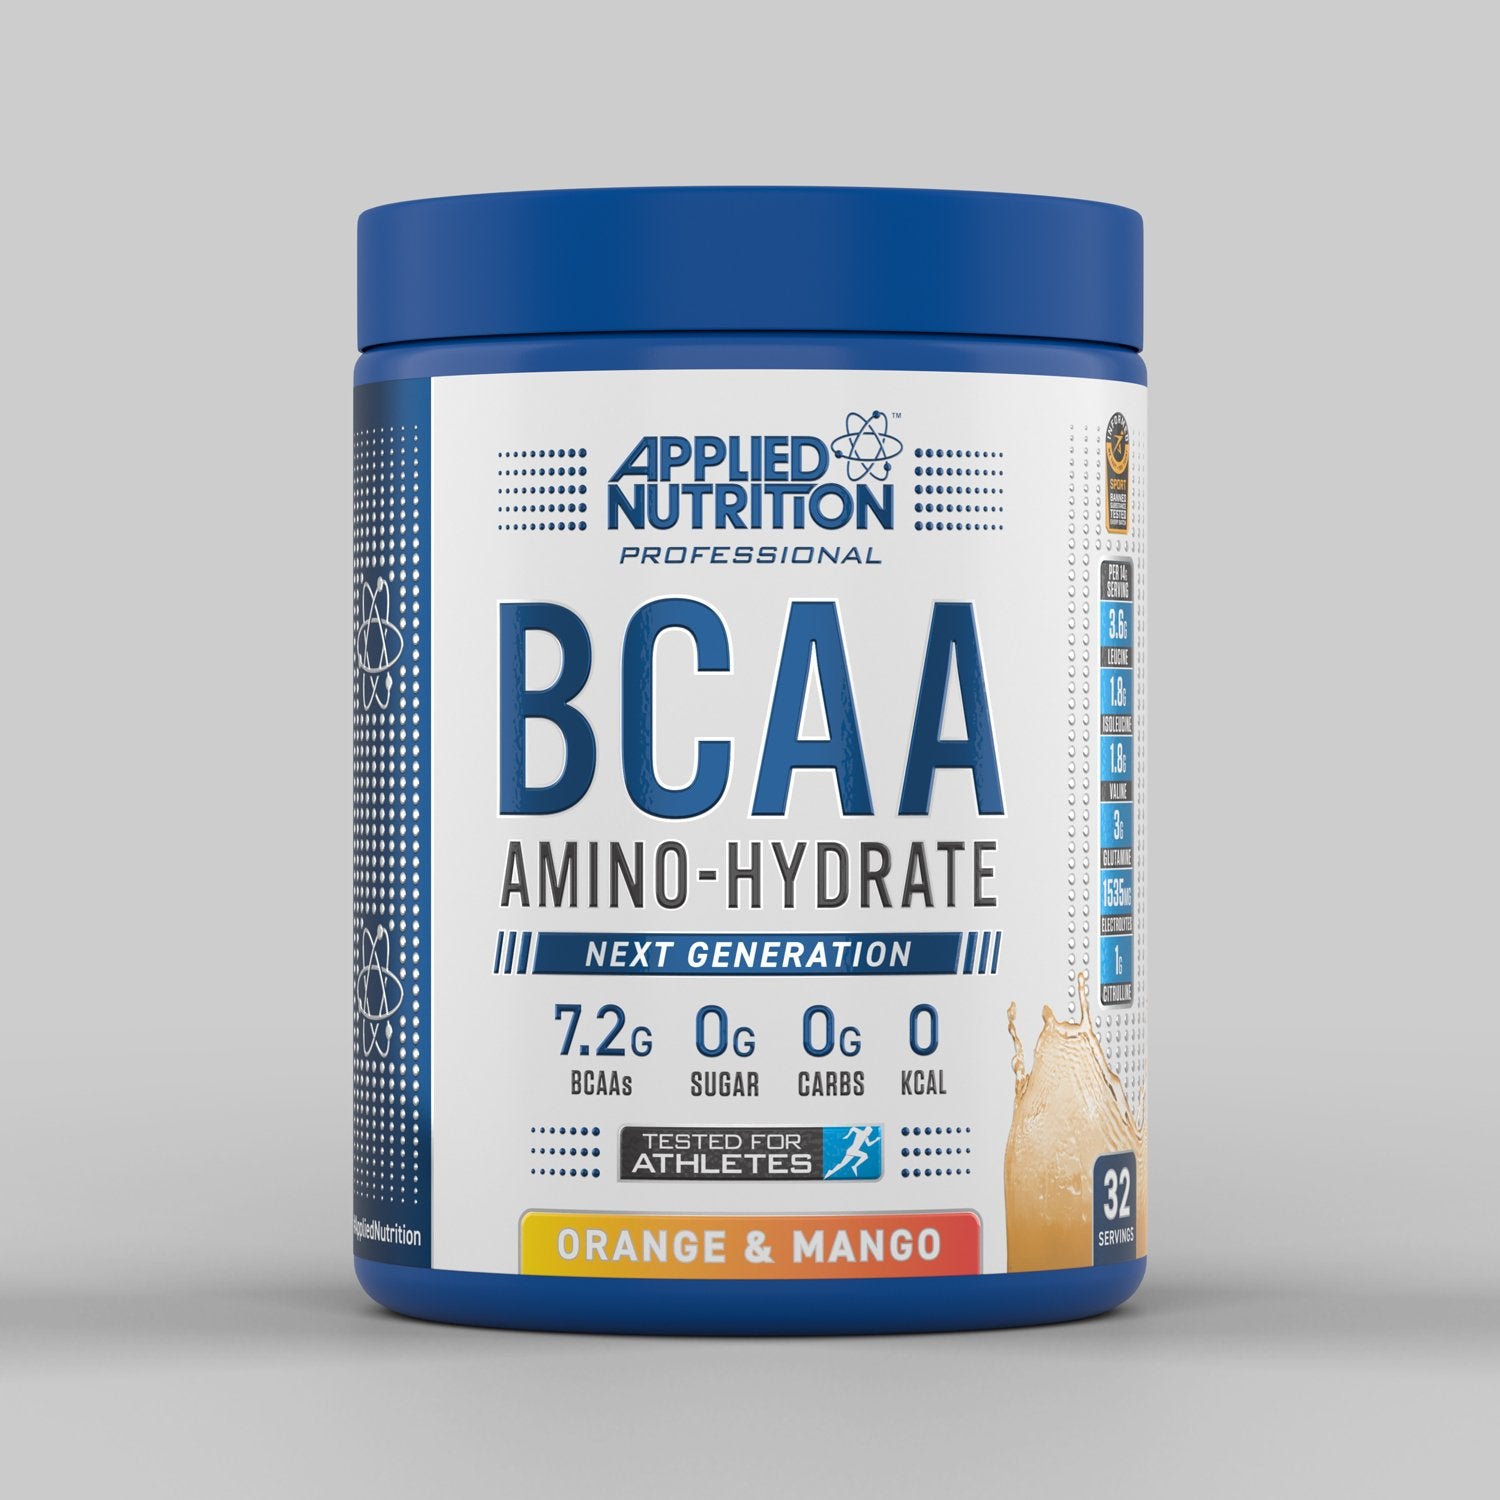 BCAA Amino-Hydrate